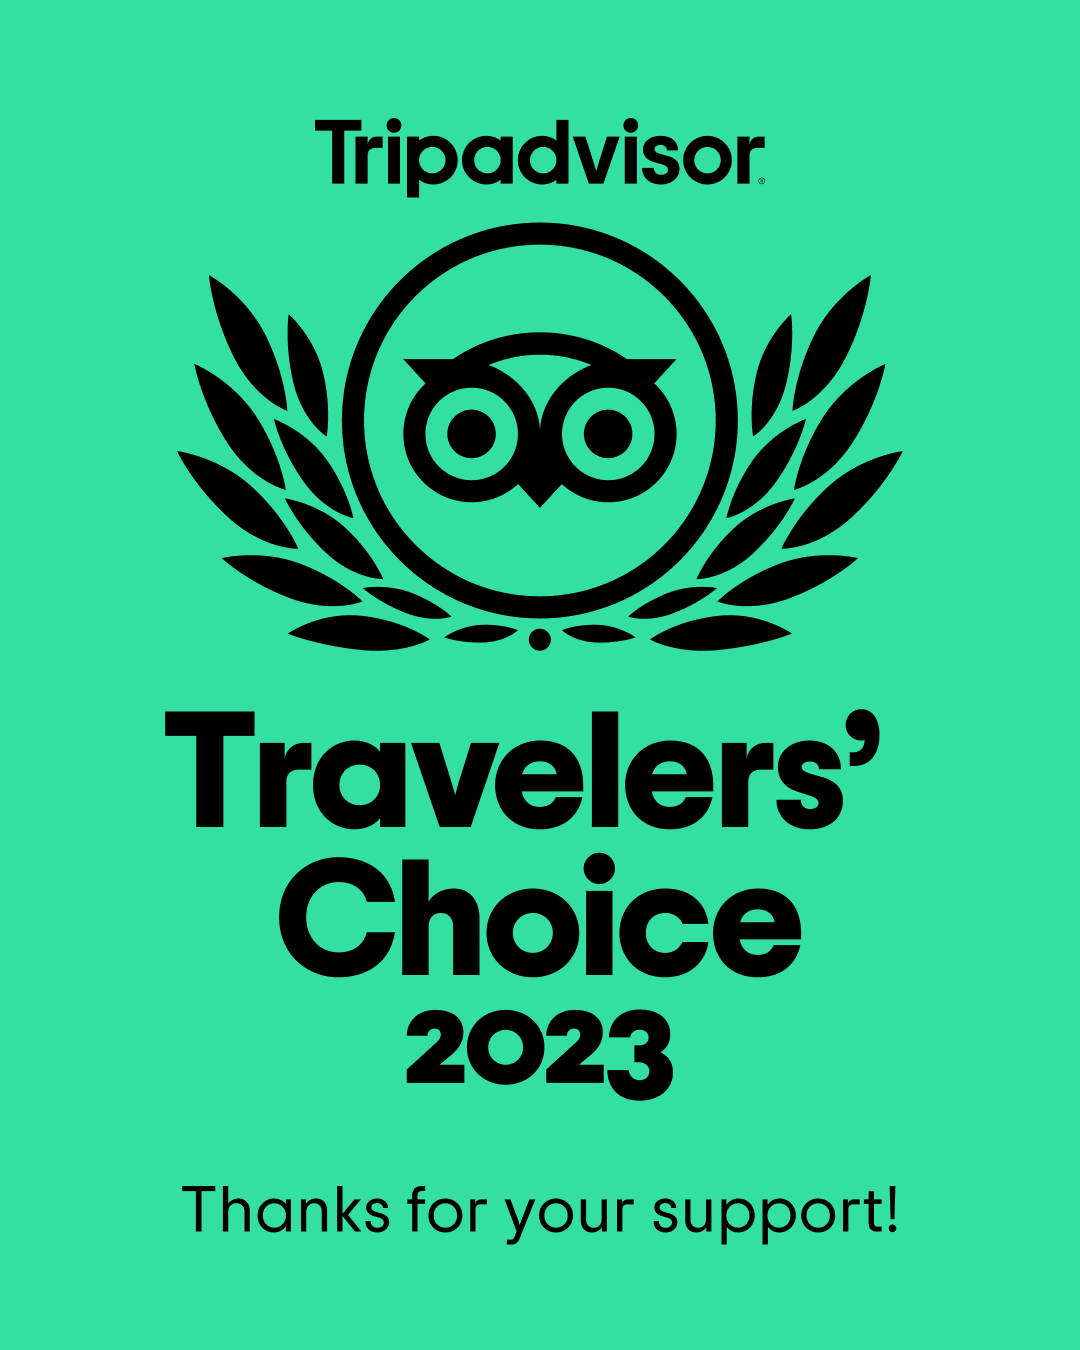 Tripadvbisor Travelers Choice 2023